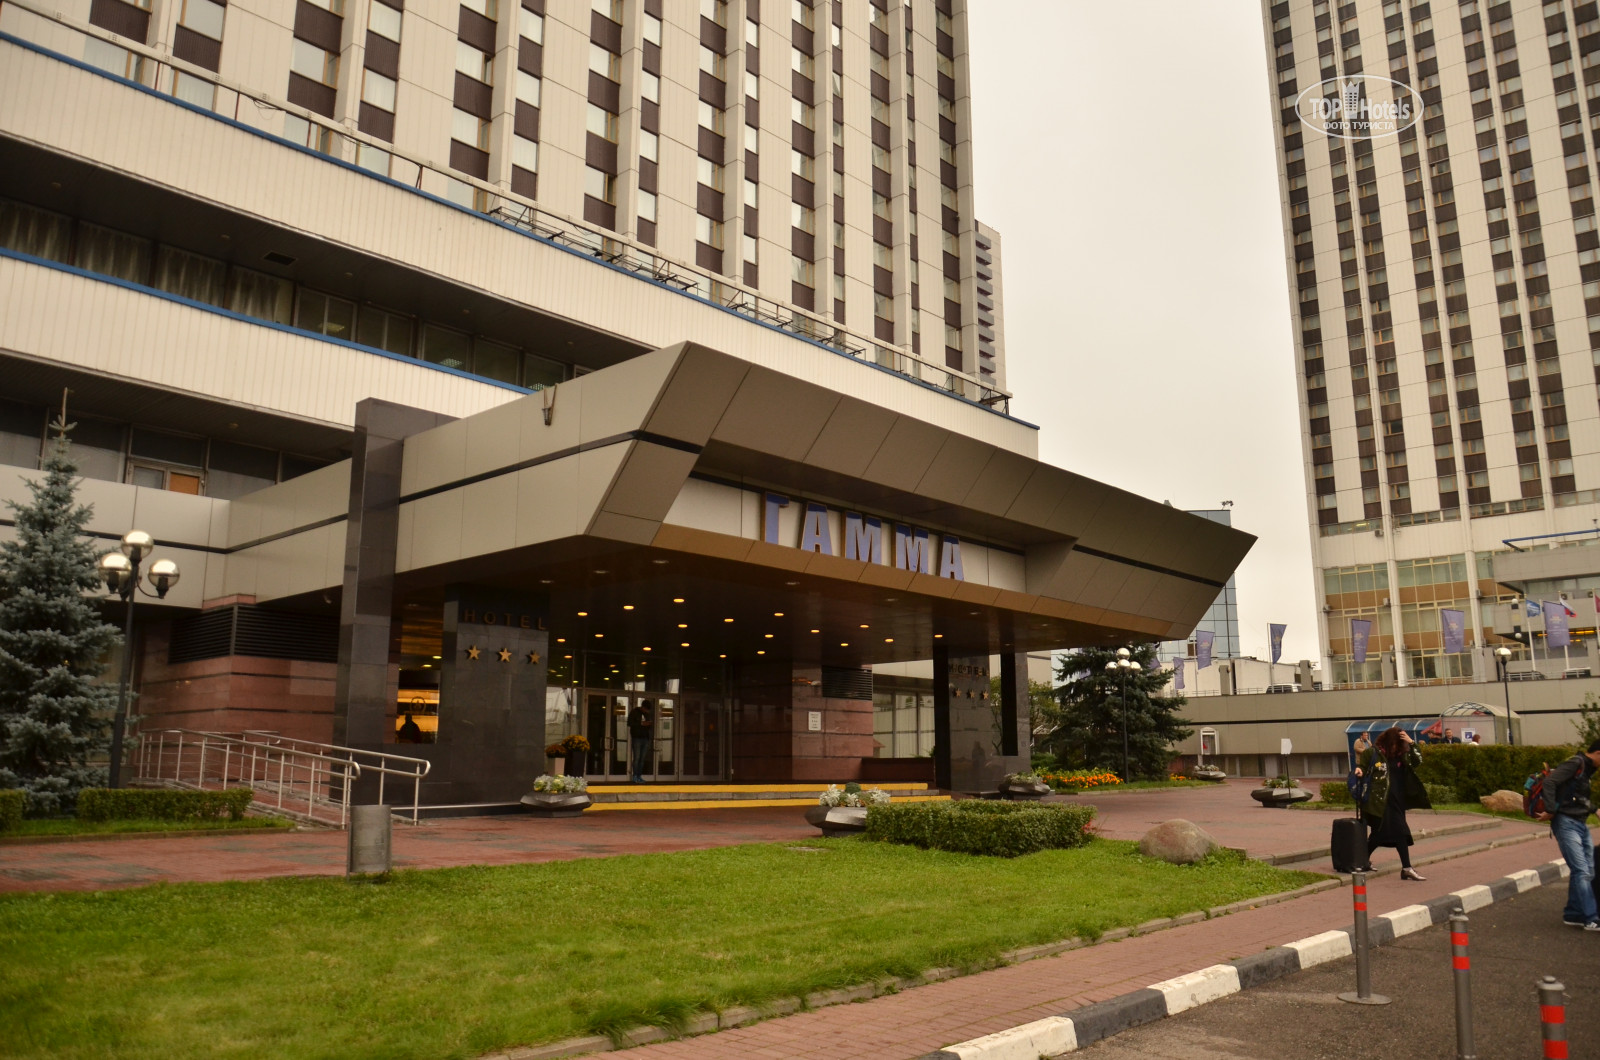 Измайлово гостиница москва официальный сайт